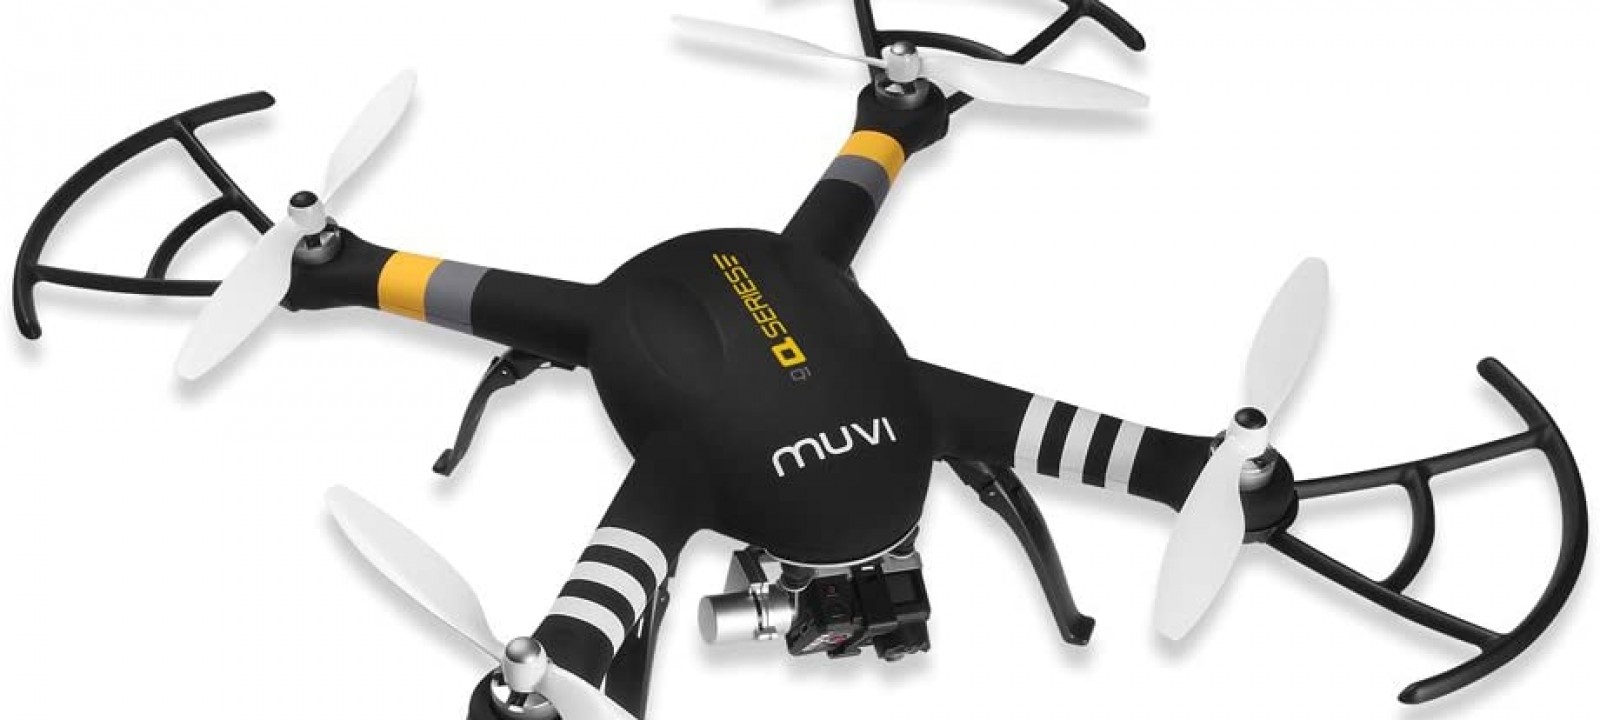 Veho Muvi Q-series Q-1 drone